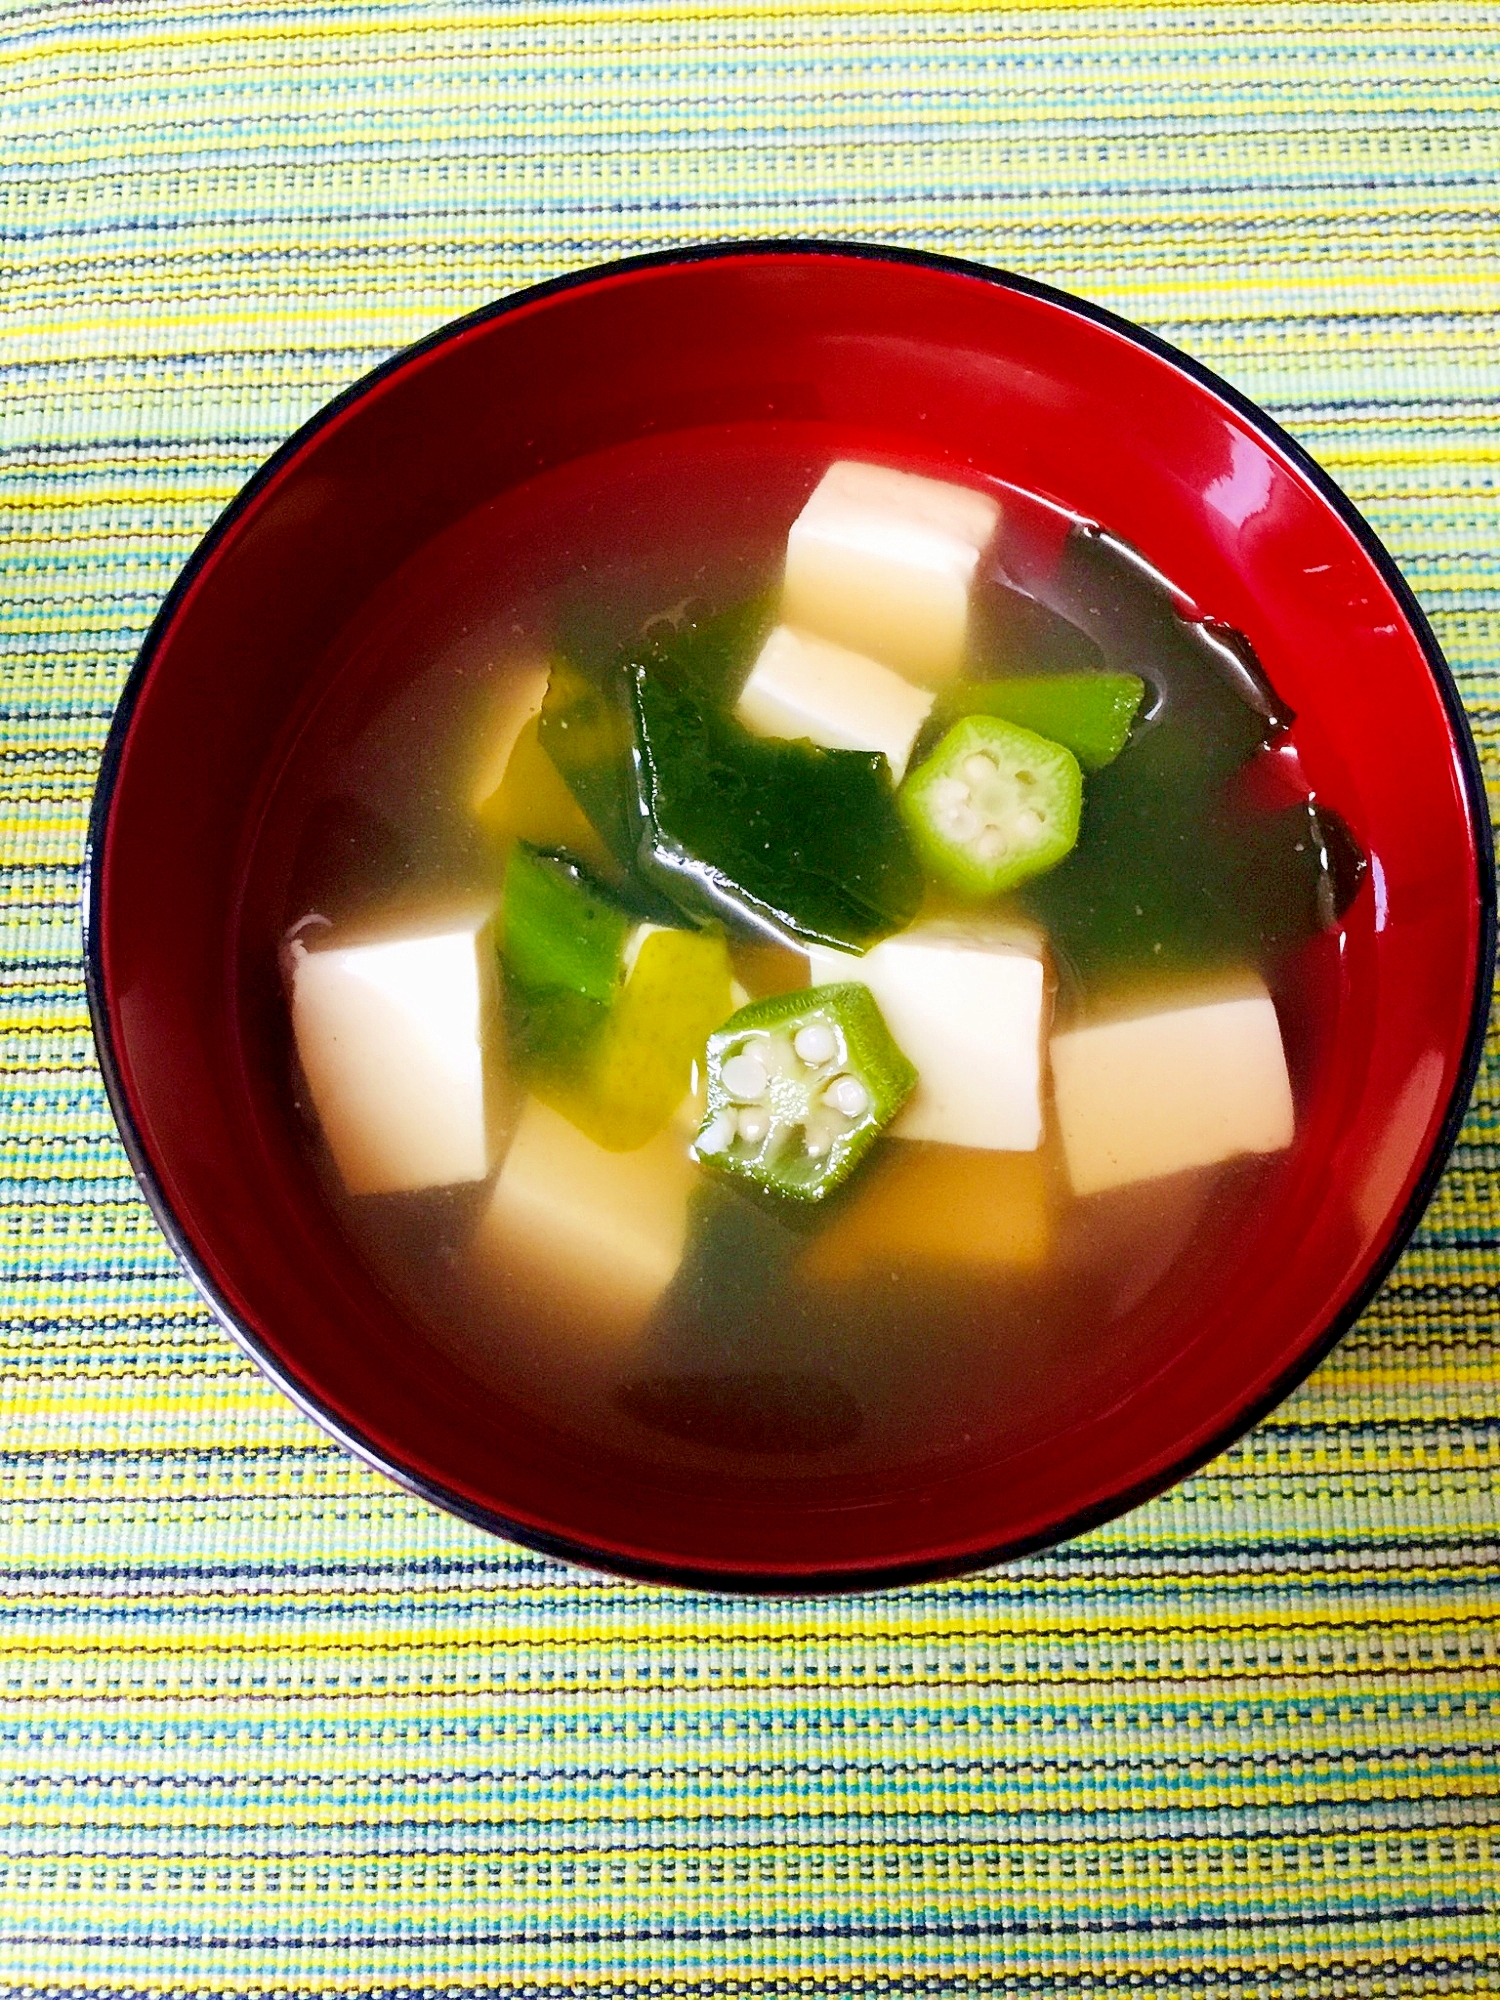 豆腐とオクラとわかめの中華スープ